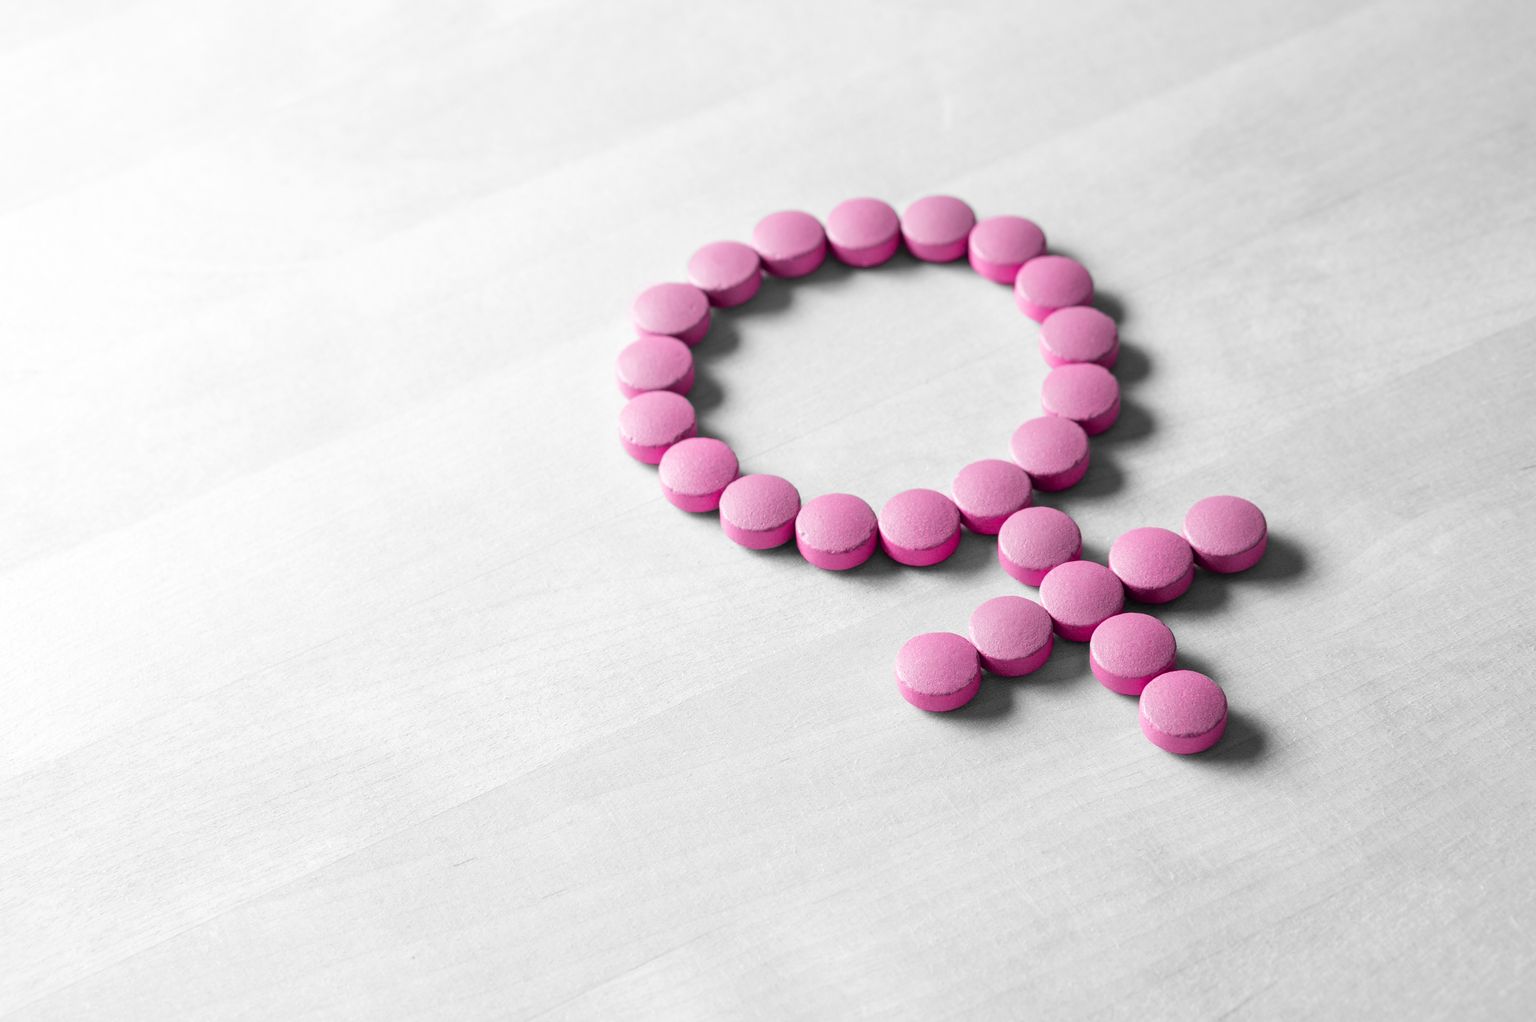 Símbolo sexual hecho de píldoras o pastillas rojas de color rosa sobre una mesa de madera.